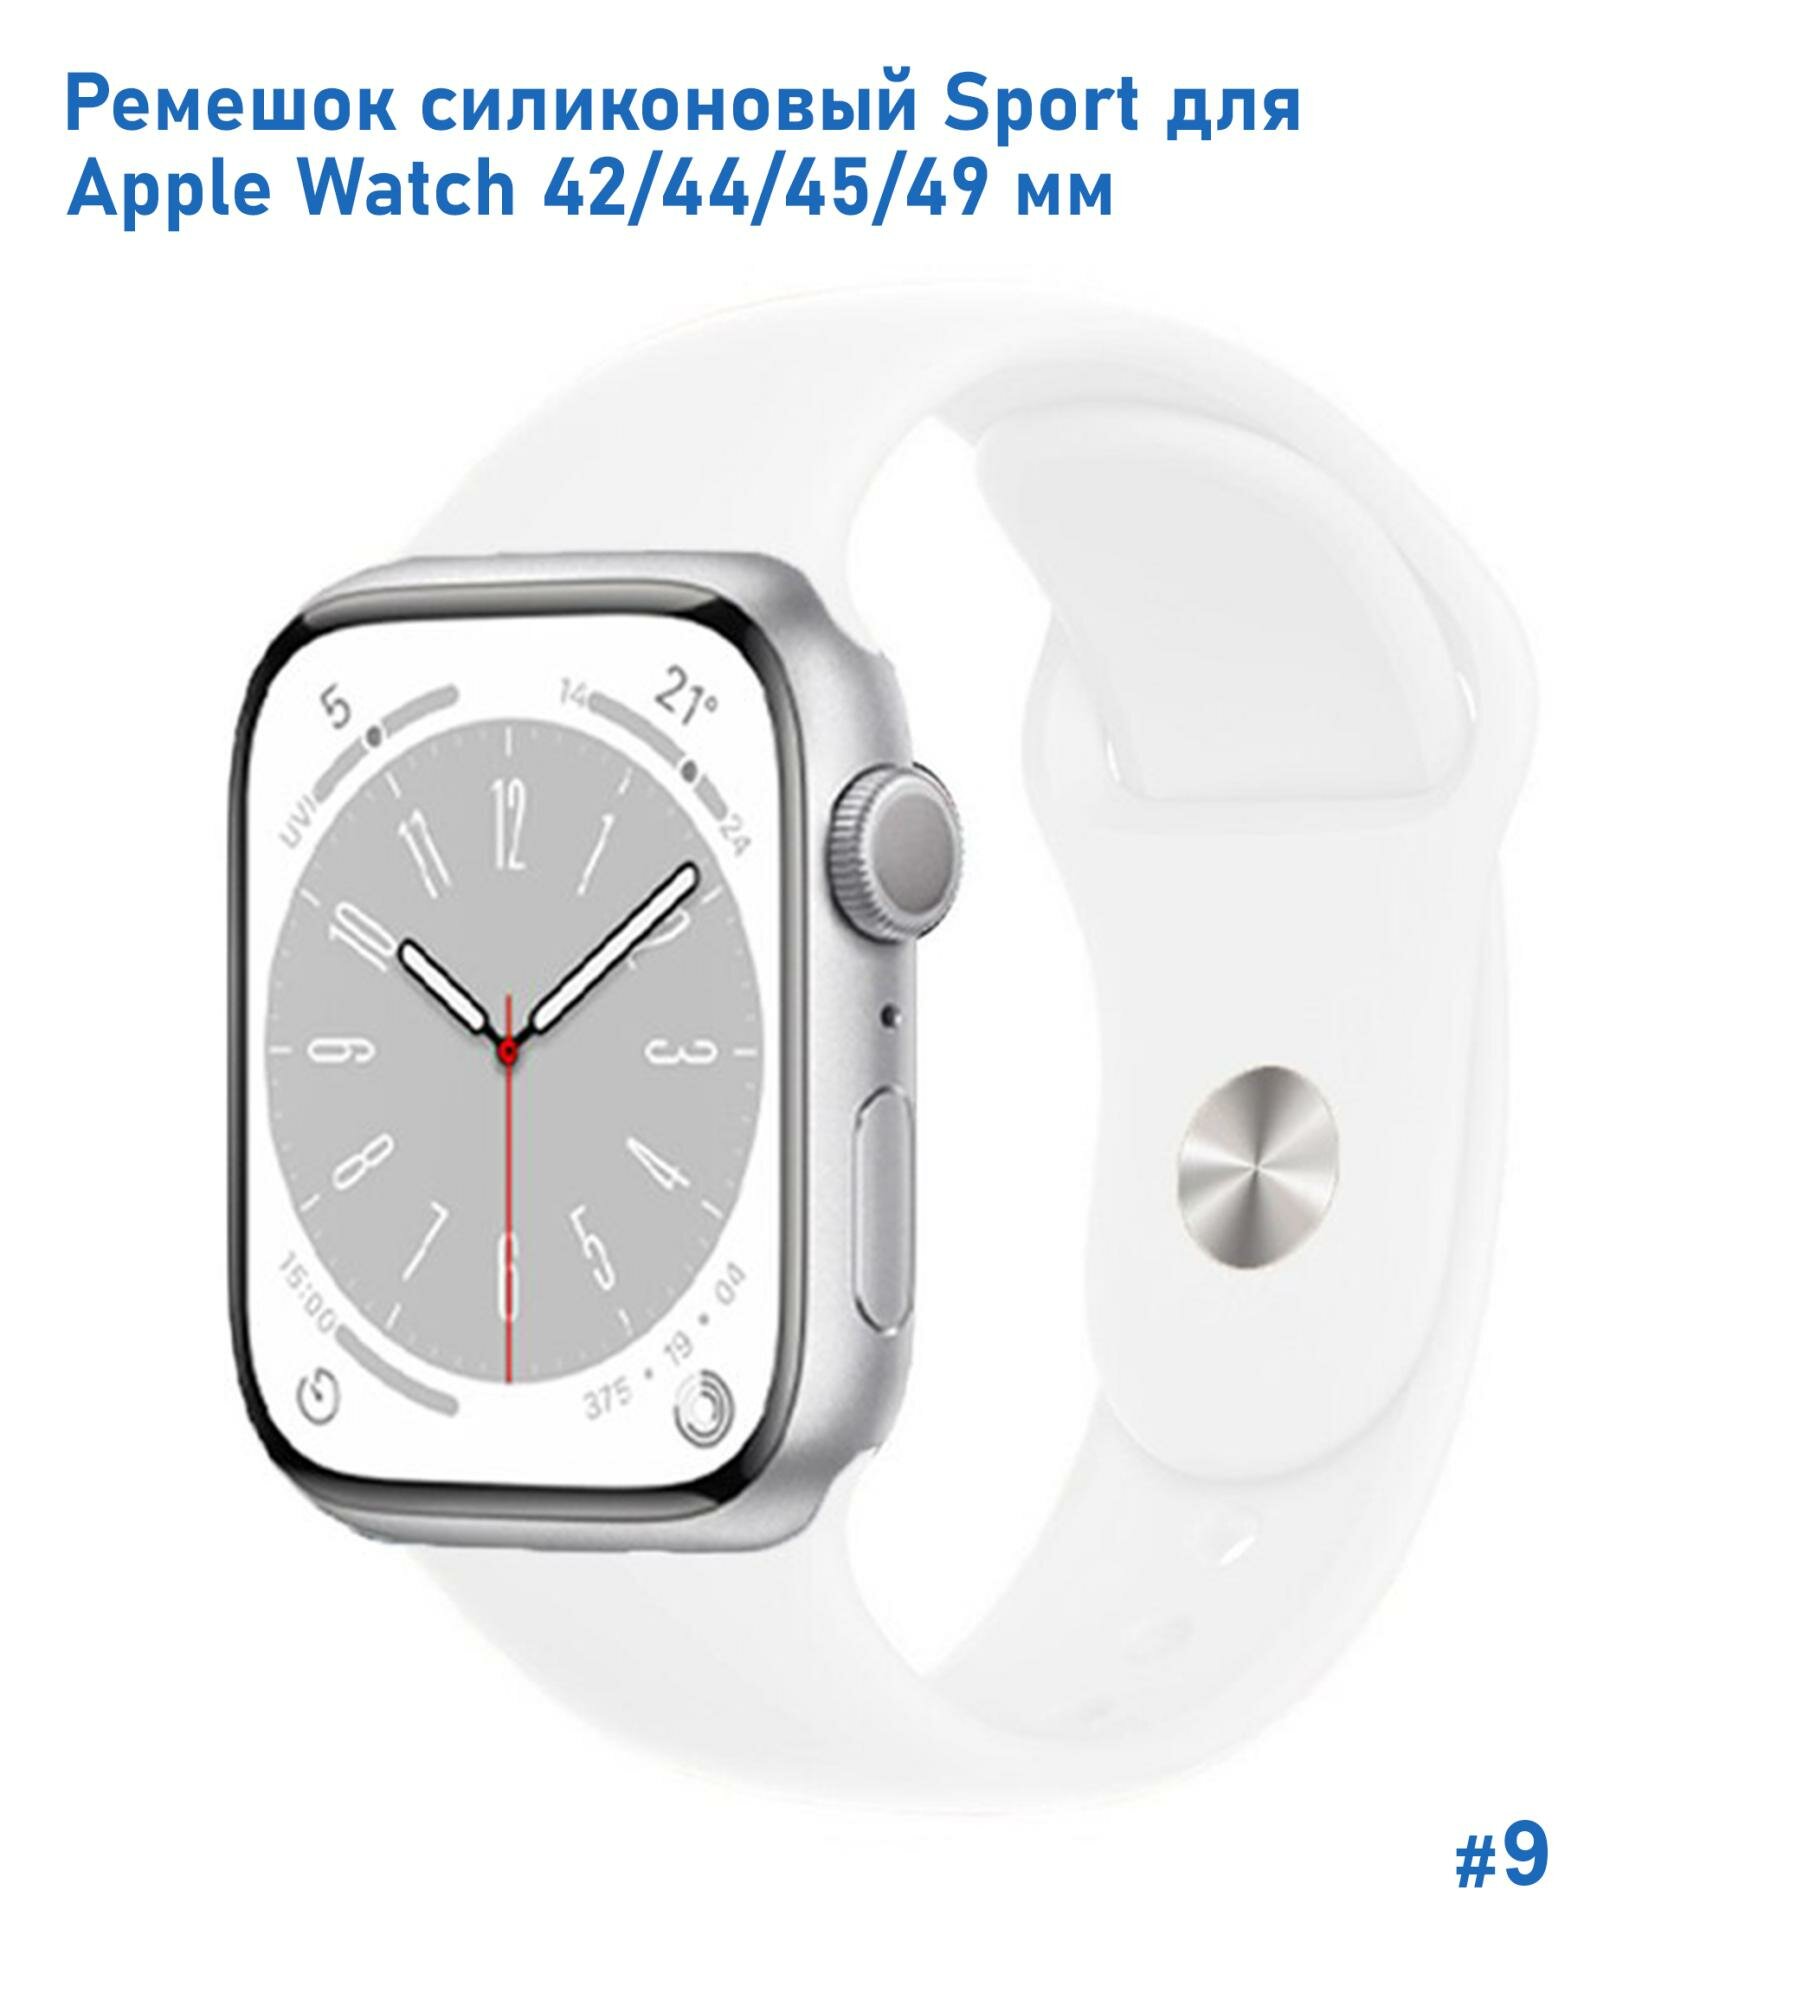 Ремешок силиконовый Sport для Apple Watch 42/44/45/49 мм, на кнопке, белый (9)